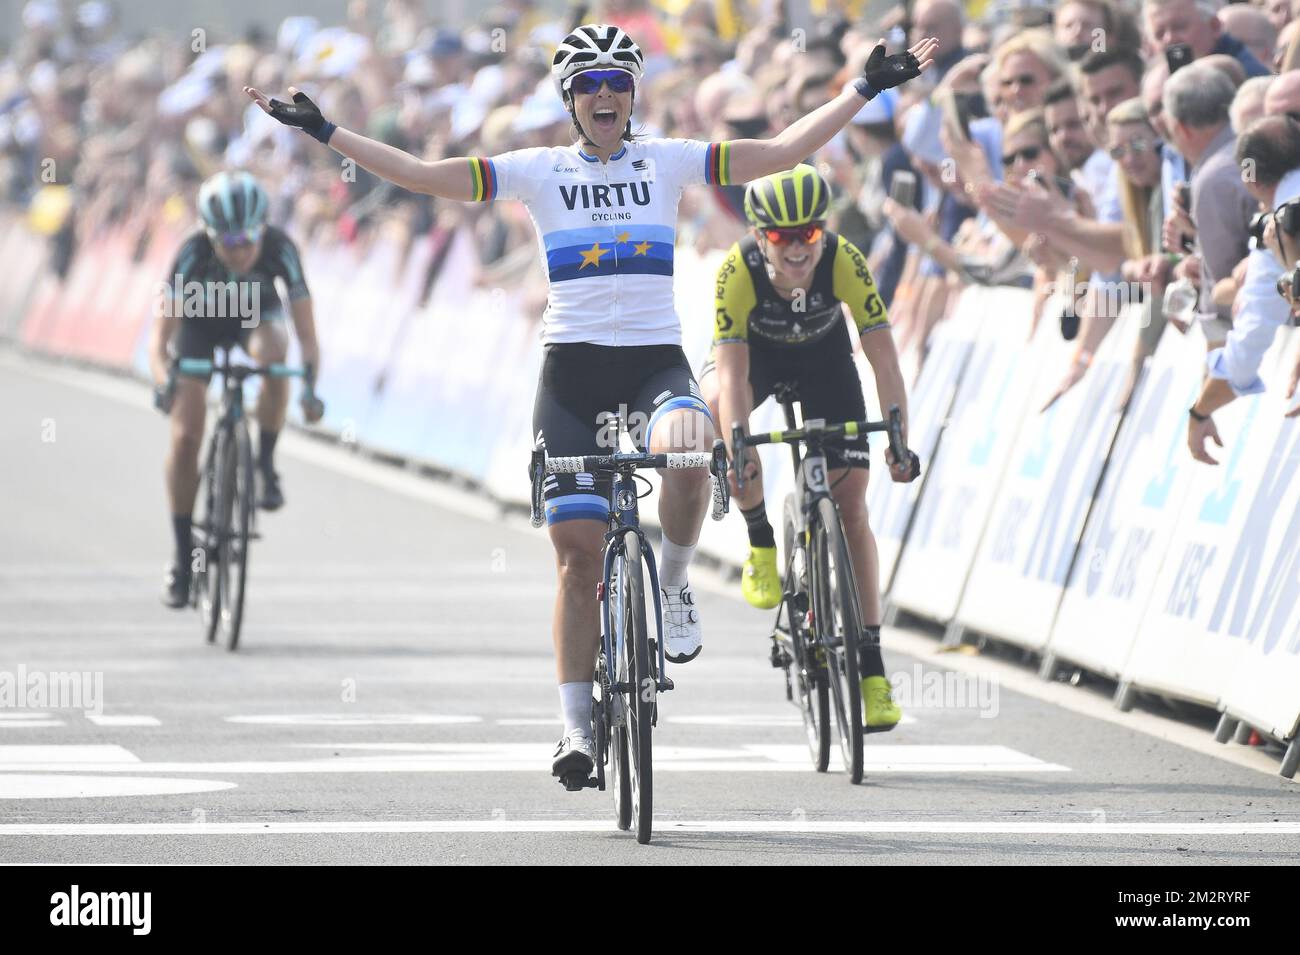 Italian Marta Bastianelli of Team Virtu celebrates as she crosses the ...